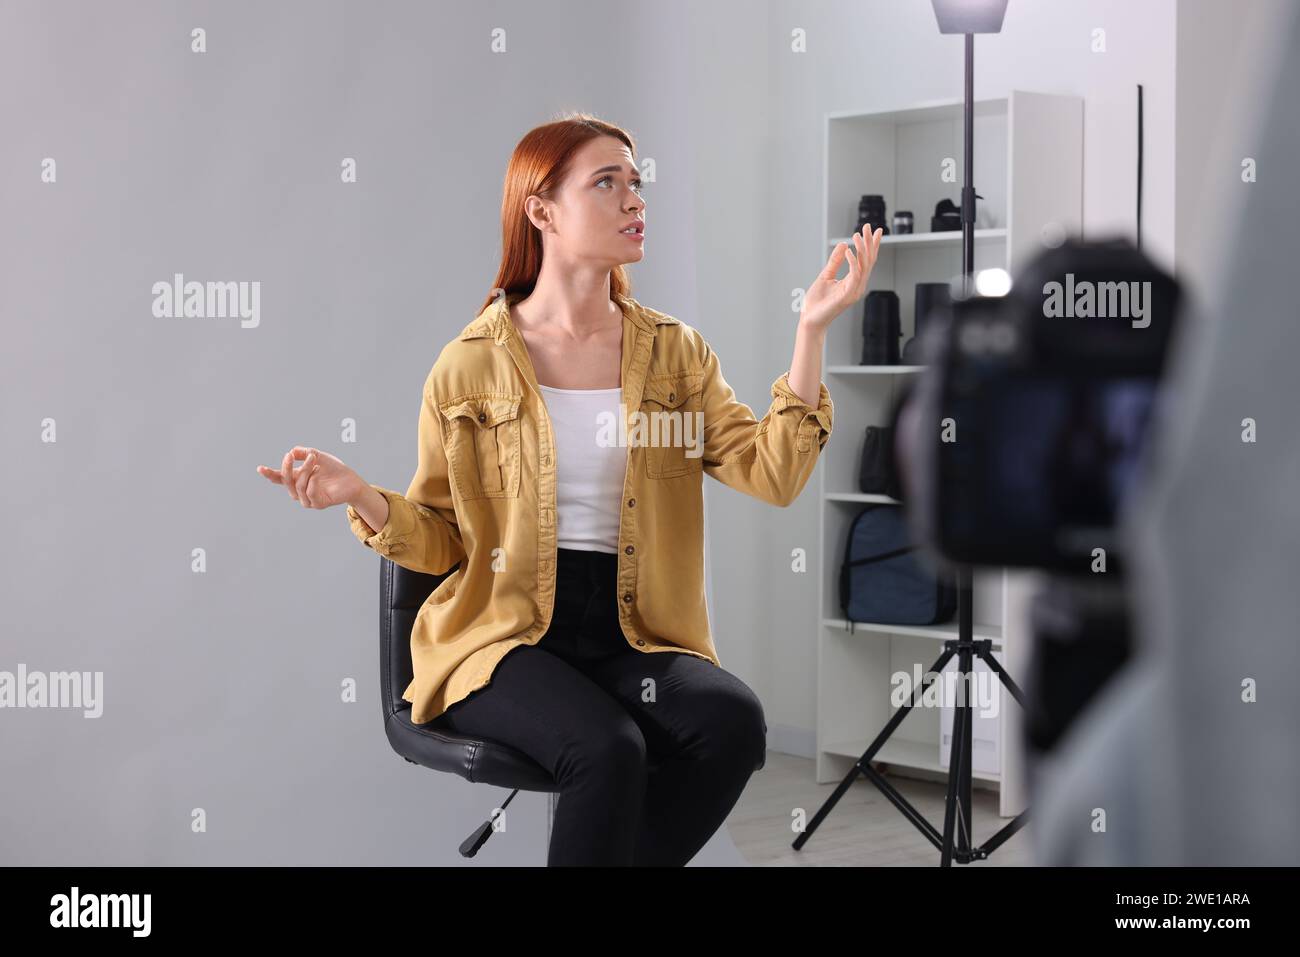 Appel de casting. Femme jouant pendant que le caméraman la filme sur fond gris clair en studio Banque D'Images